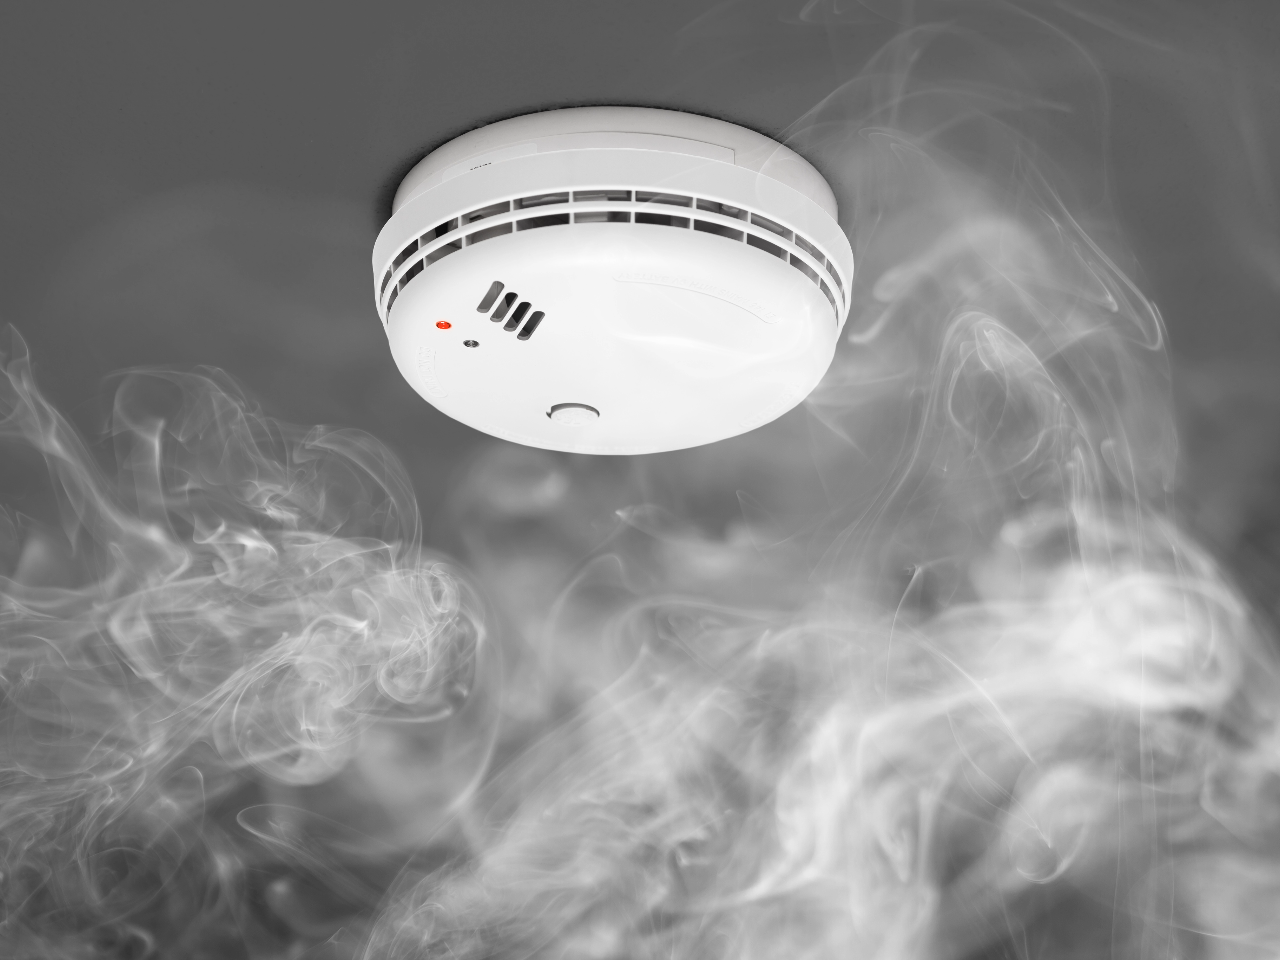 Dūmų detektorių įrengimas namuose nuo nelaimės gali ir neapsaugoti